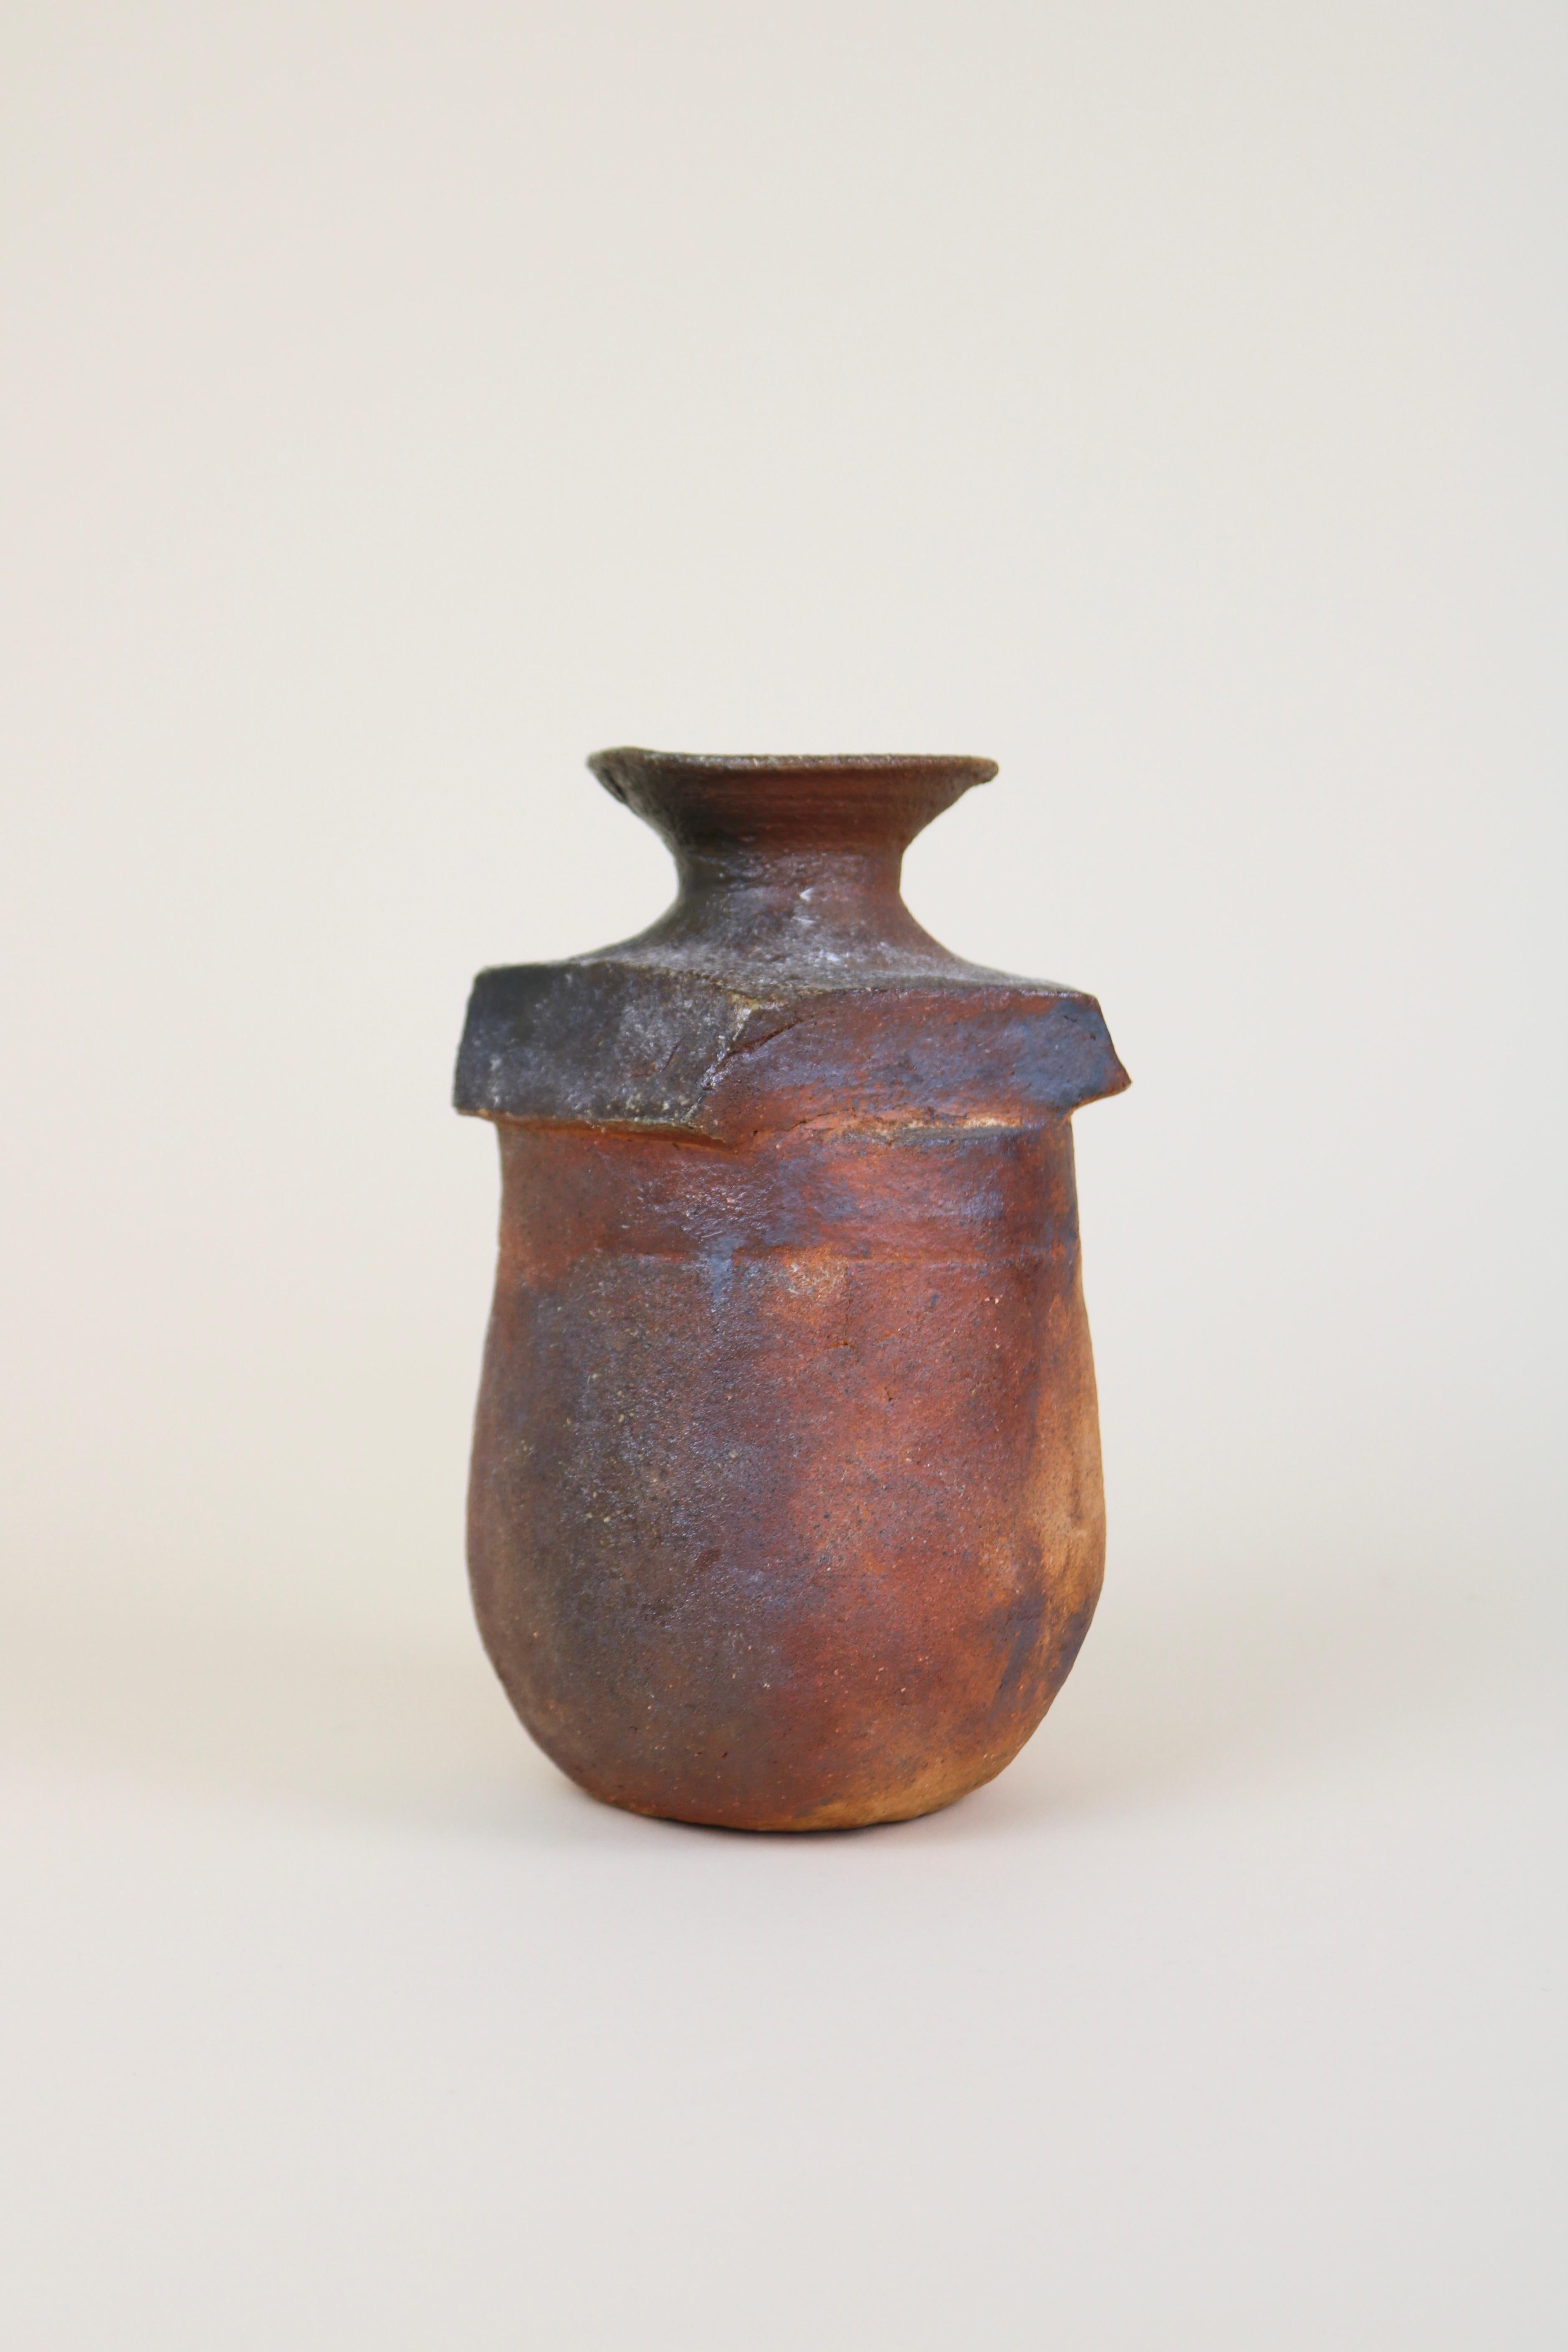 Skulpturale Keramikvase des Töpfers Gérard Brossard aus La Borne, um 1980
Eine klobige und schwere Vase aus Steinzeug mit einer asymmetrischen Form und einem rauen, handgefertigten Aussehen.

Brossard war in den 1970er Jahren ein Schüler von Jean